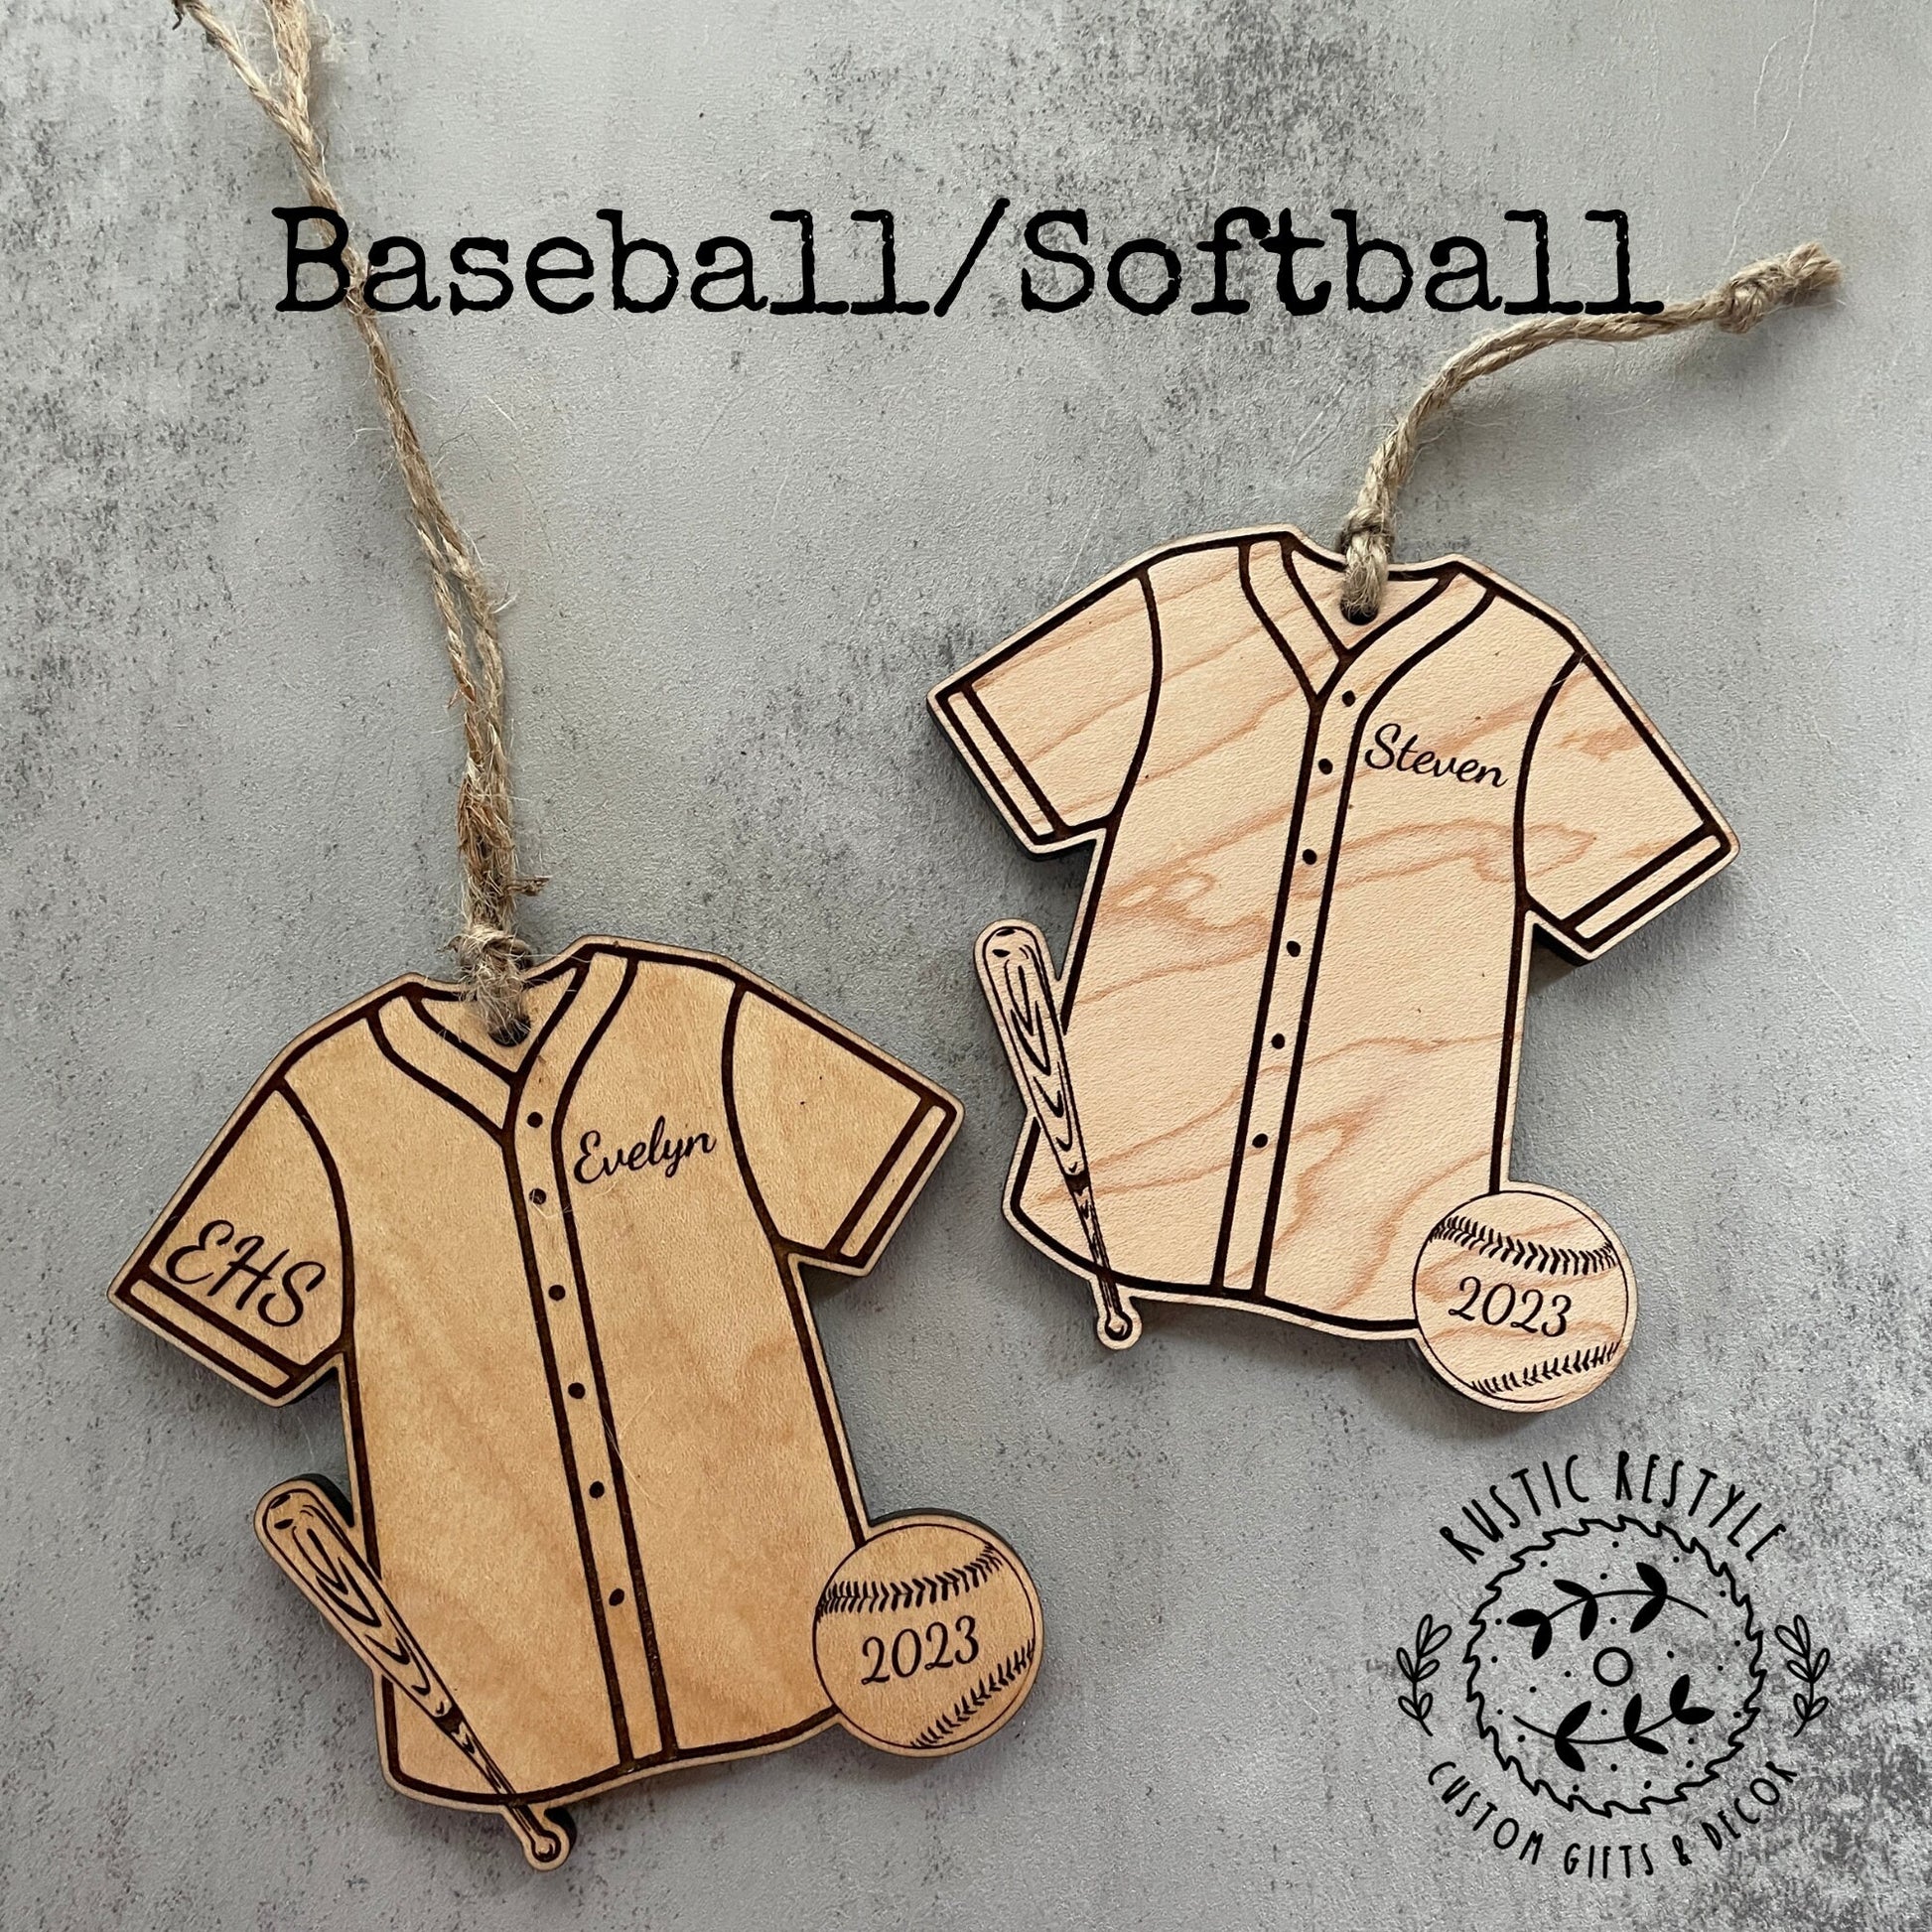 Baseball/ Softball Ornament, Personalized wood baseball/softball Christmas ornament